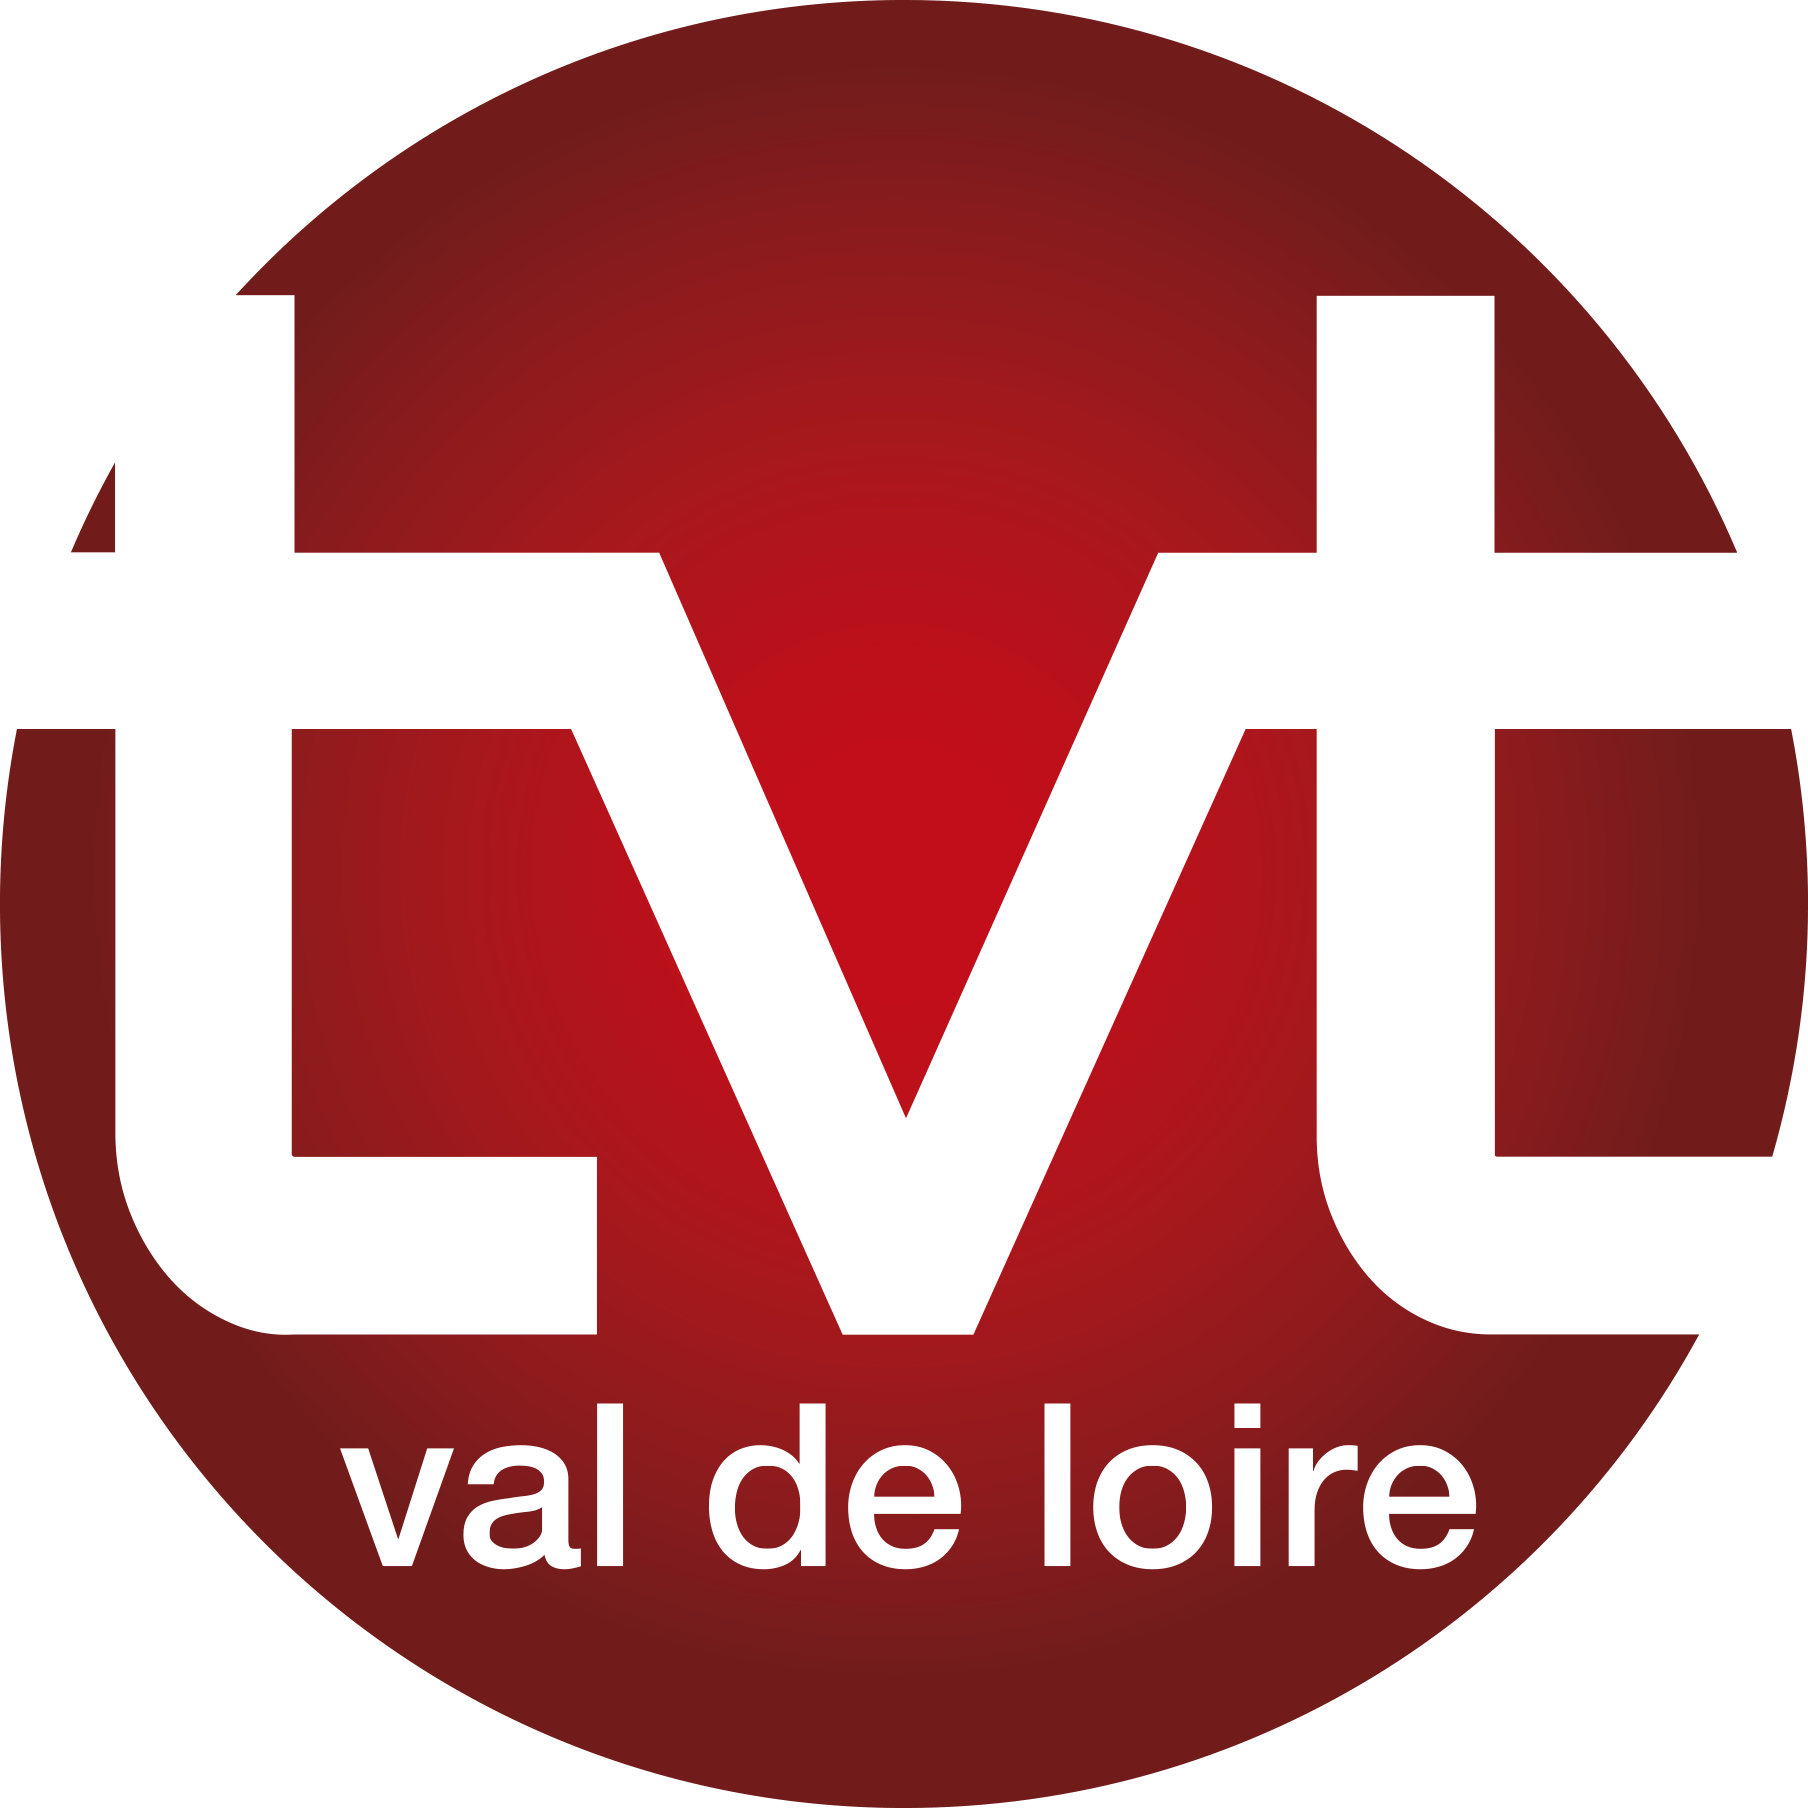 TVT Logo - File:Logo tvt 2016 RVB.png - Wikimedia Commons